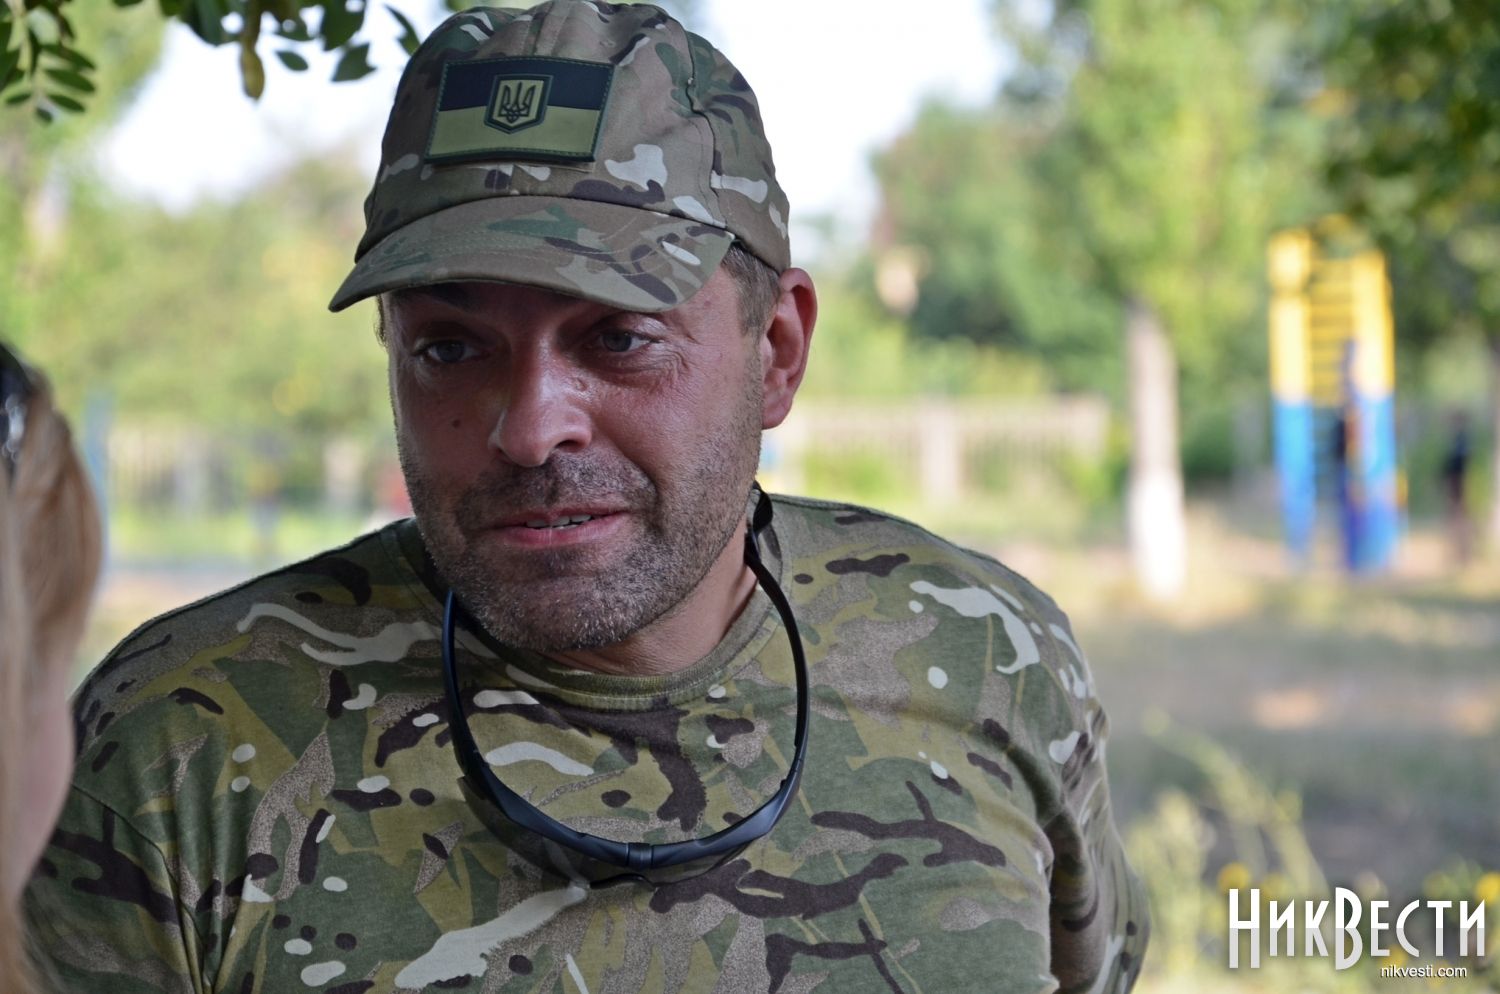 Чому бійці потрапили в полон під Донецьким аеропортом, – Бірюков